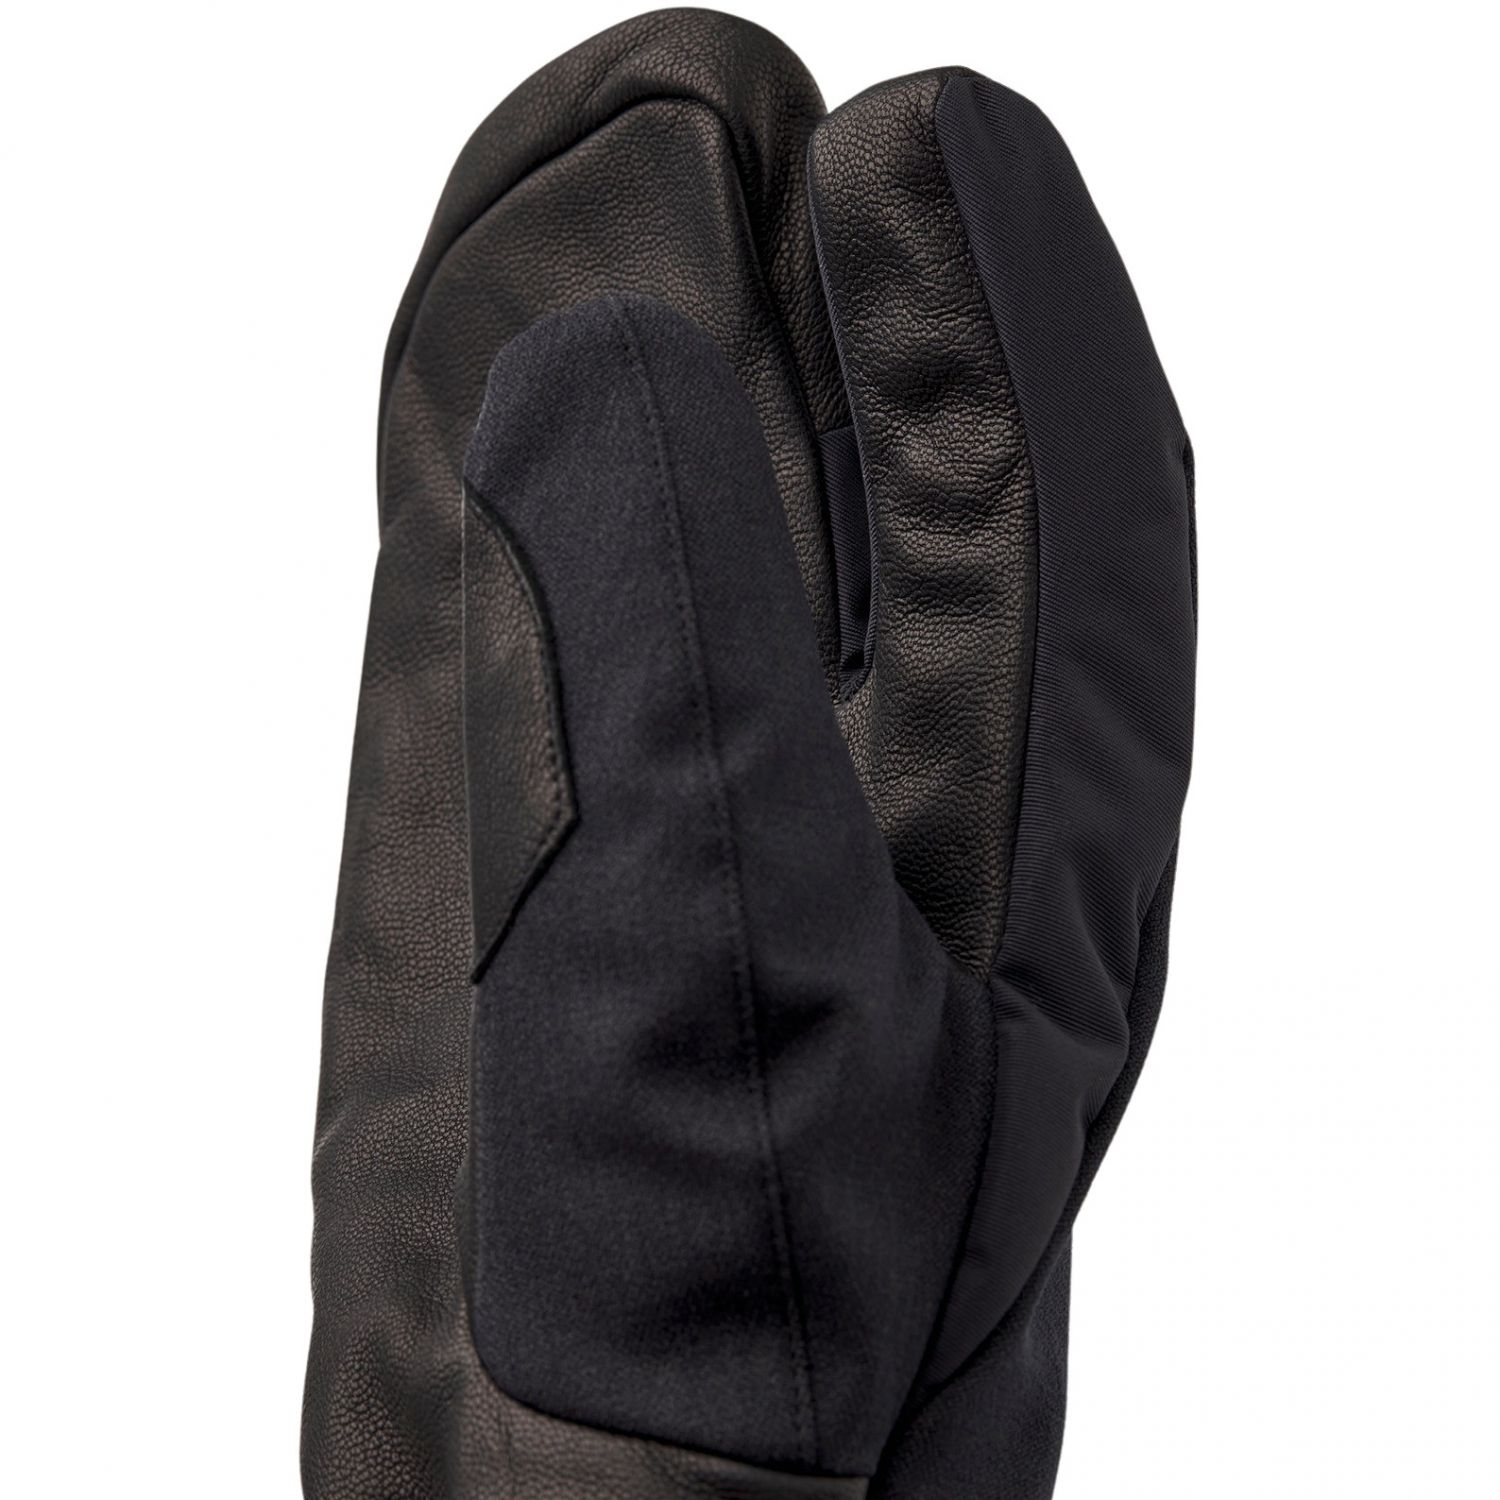 Hestra Powder Gauntlet, 3-vingerige skihandschoenen, zwart